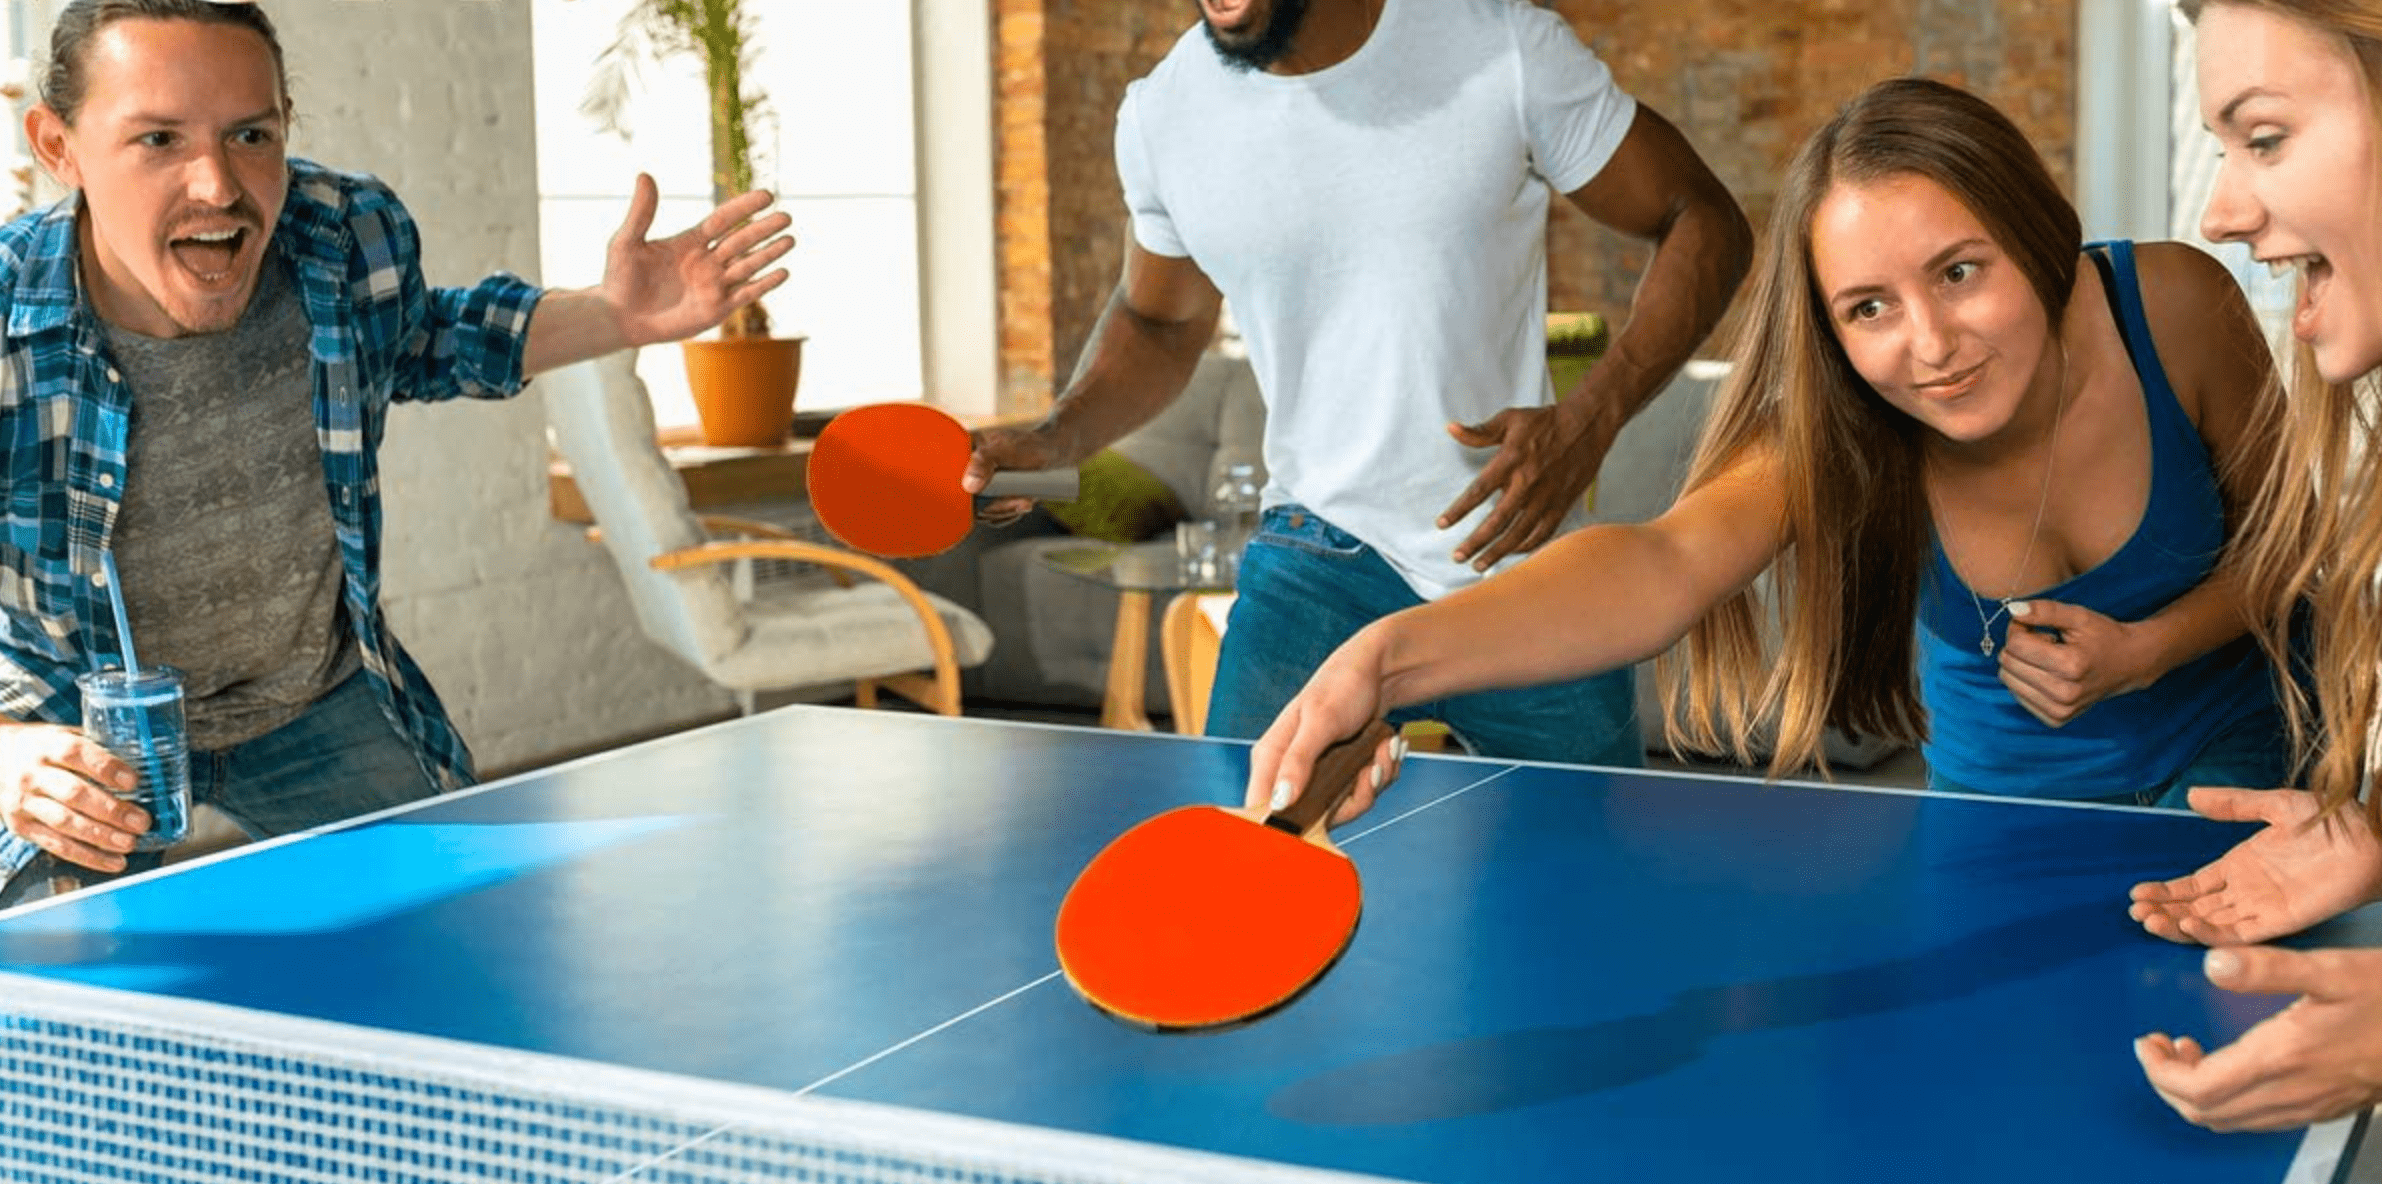 Table de ping pong : meilleures 10 tables en 2022 3